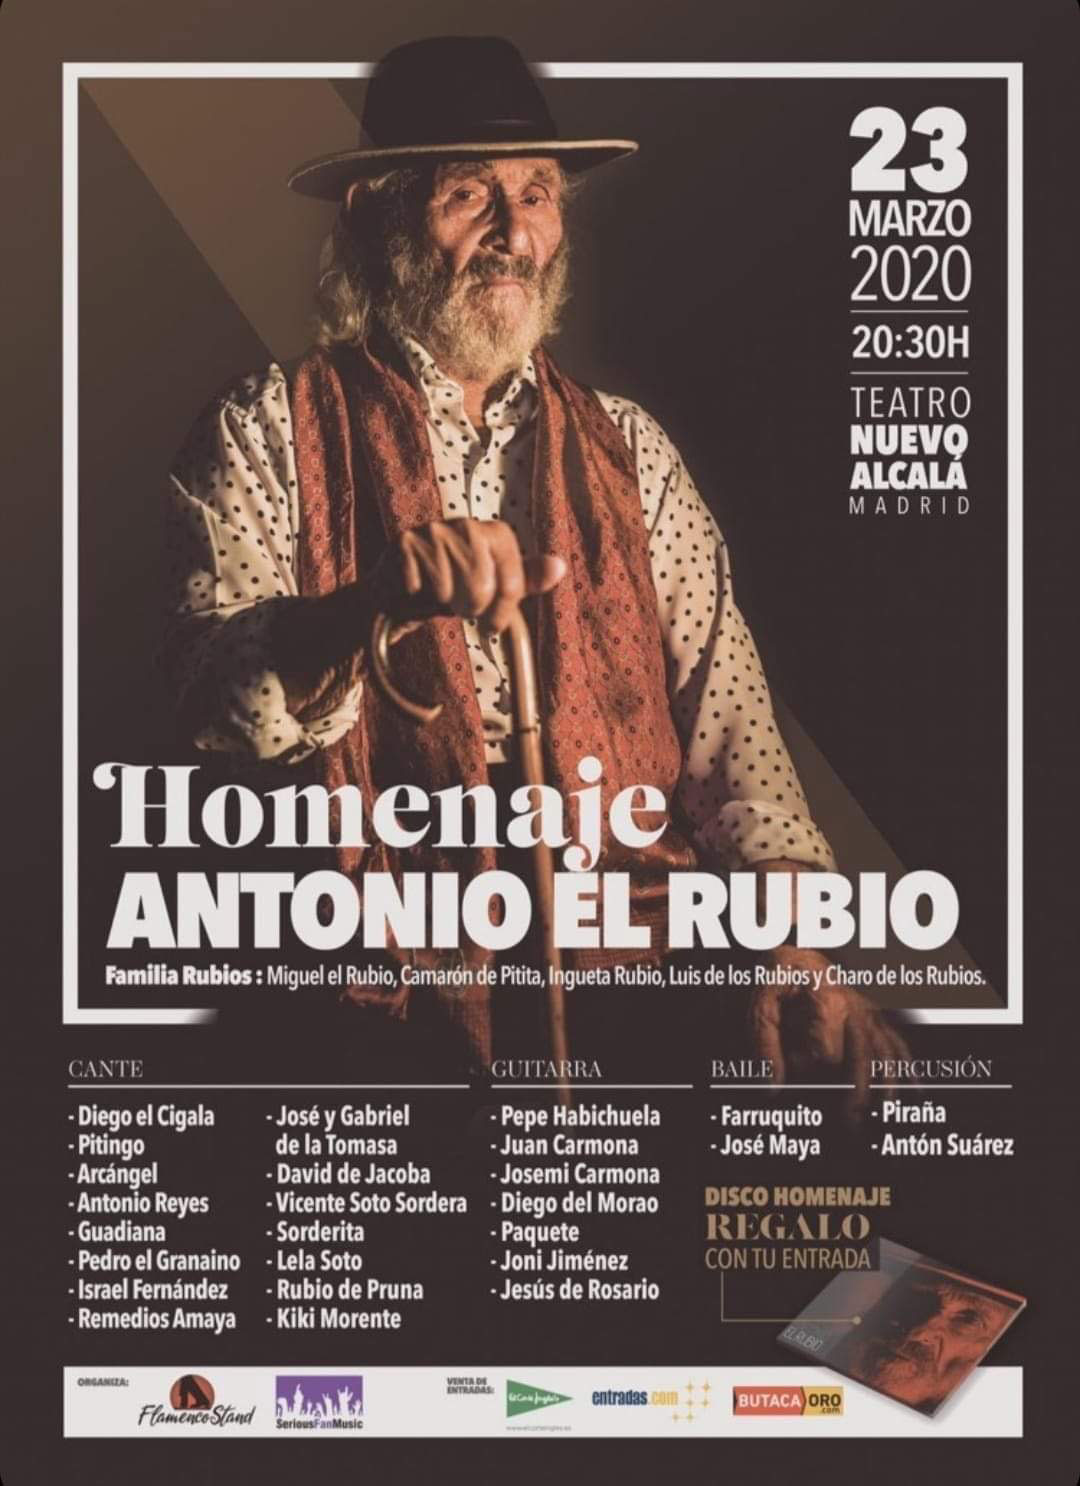 Homenaje a Antonio el Rubio